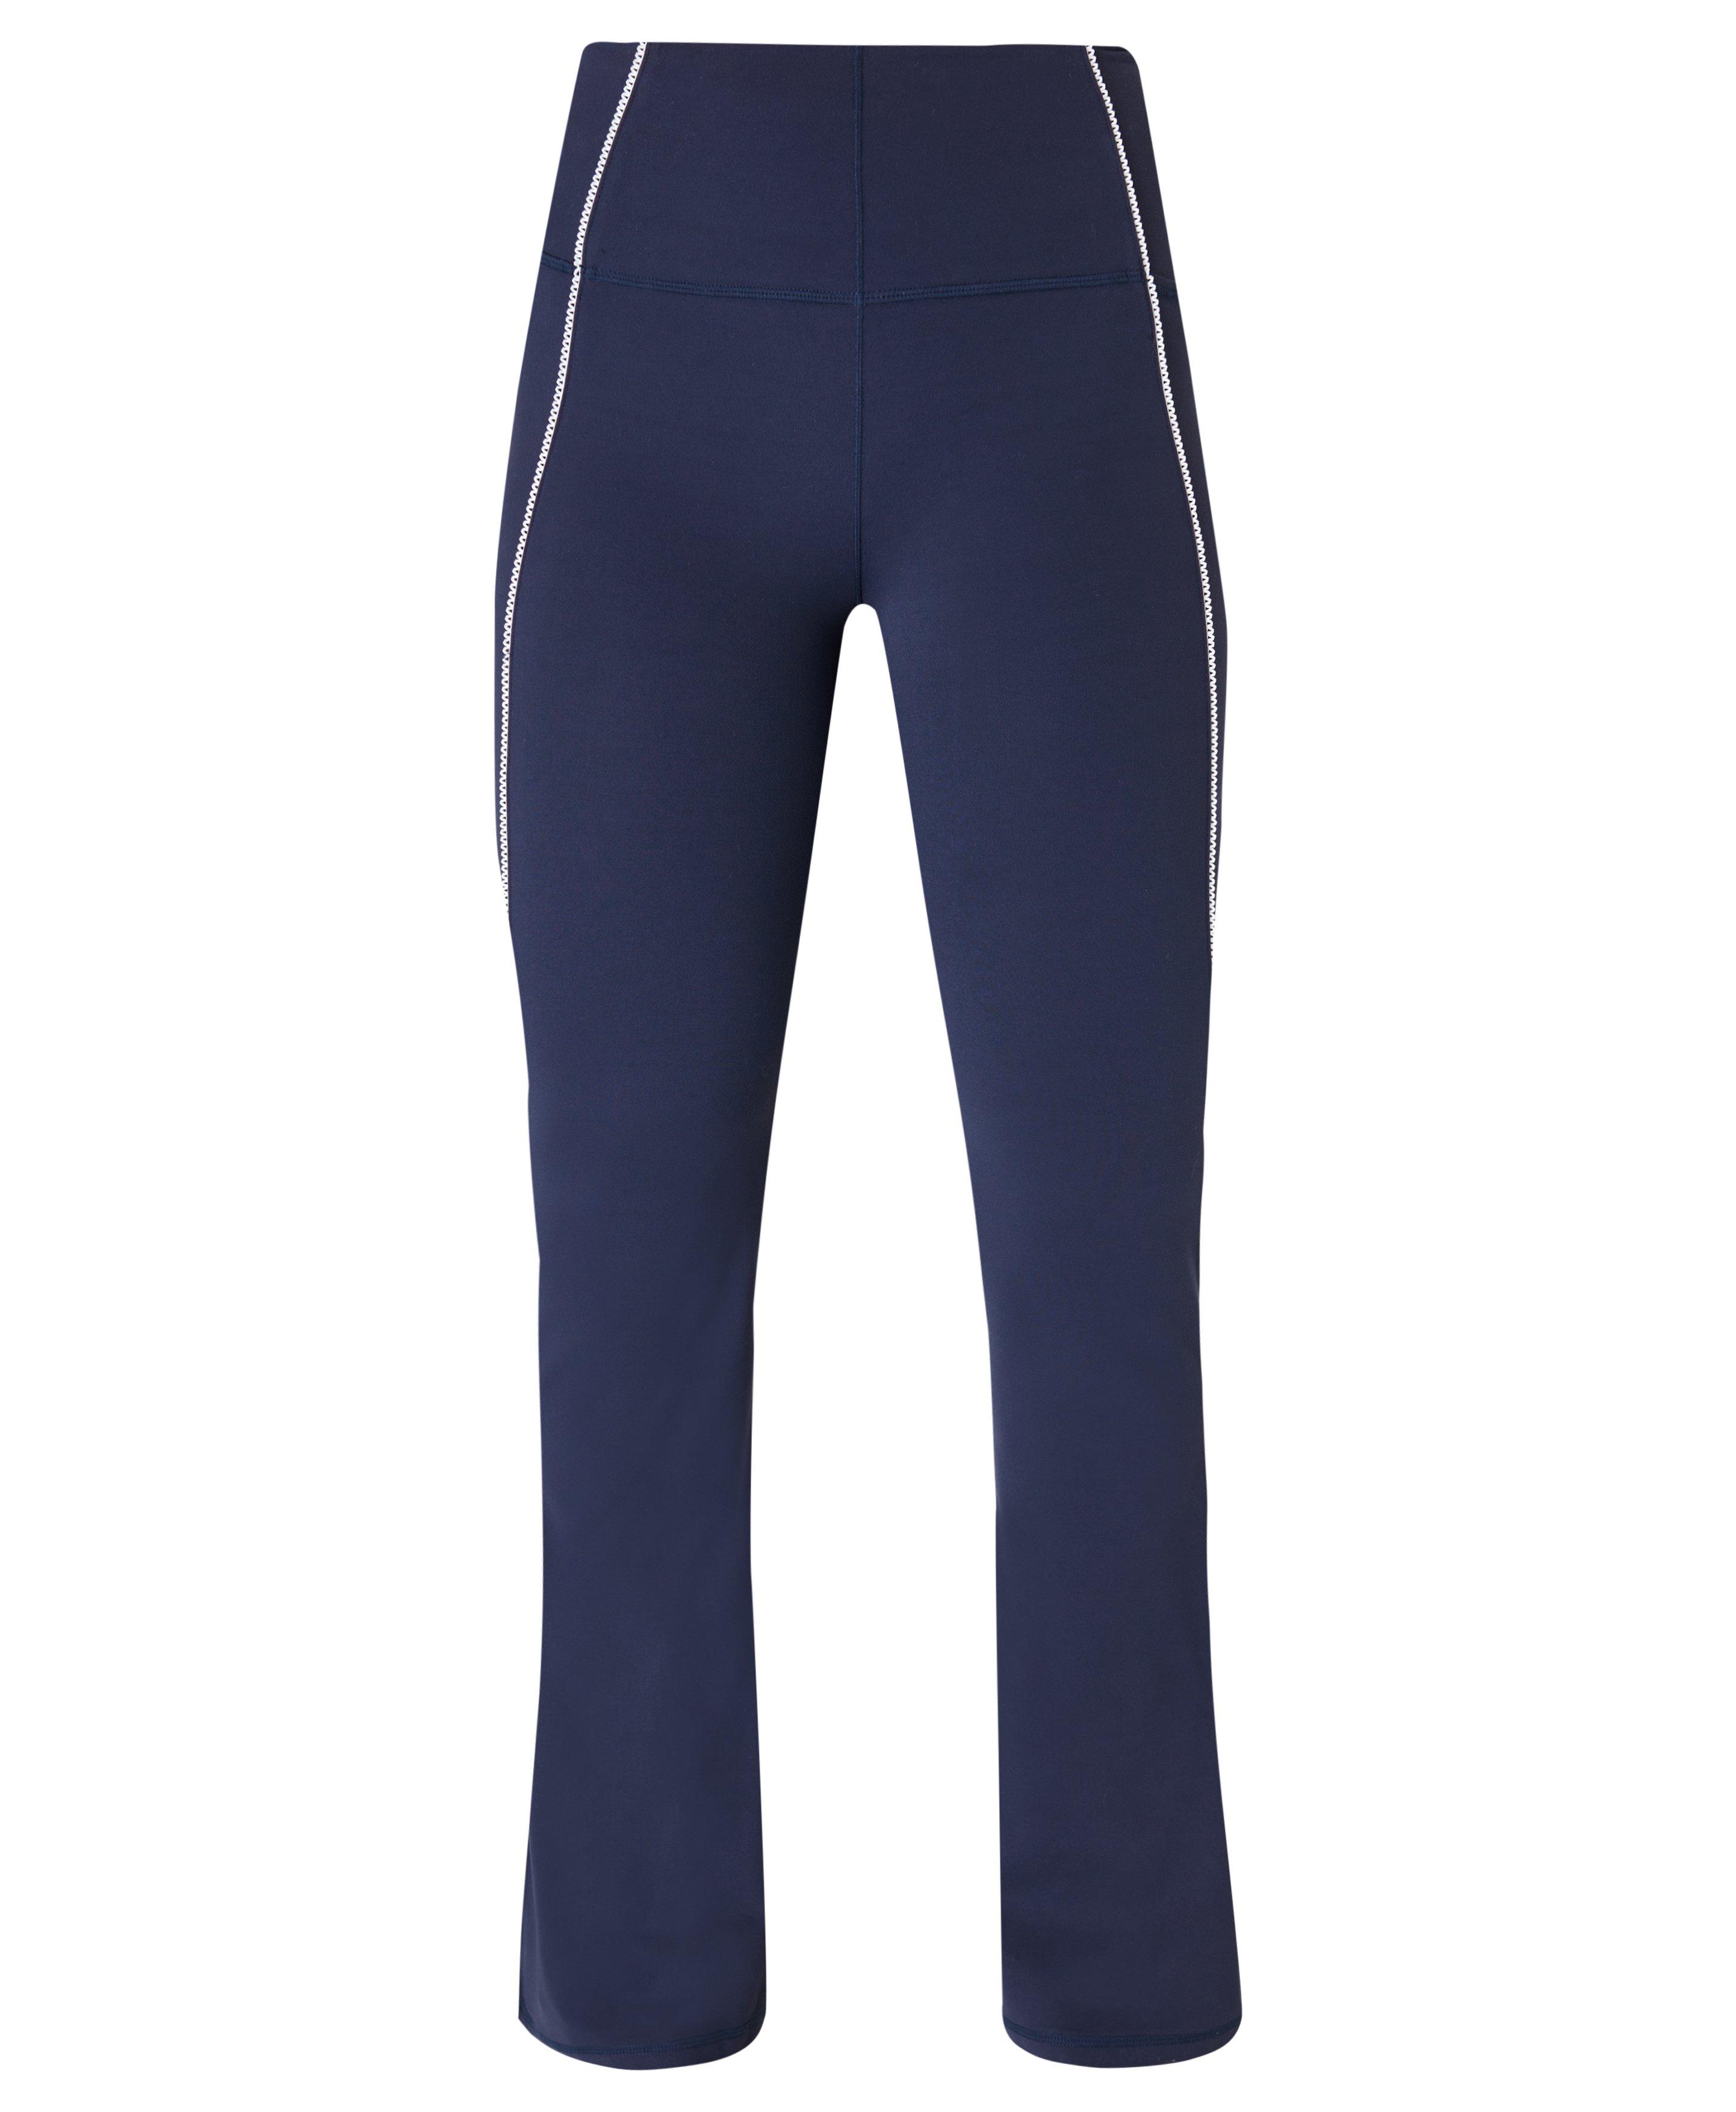 Super Soft Picot Lace Flare Pants - Navy Blue, Women's Pants